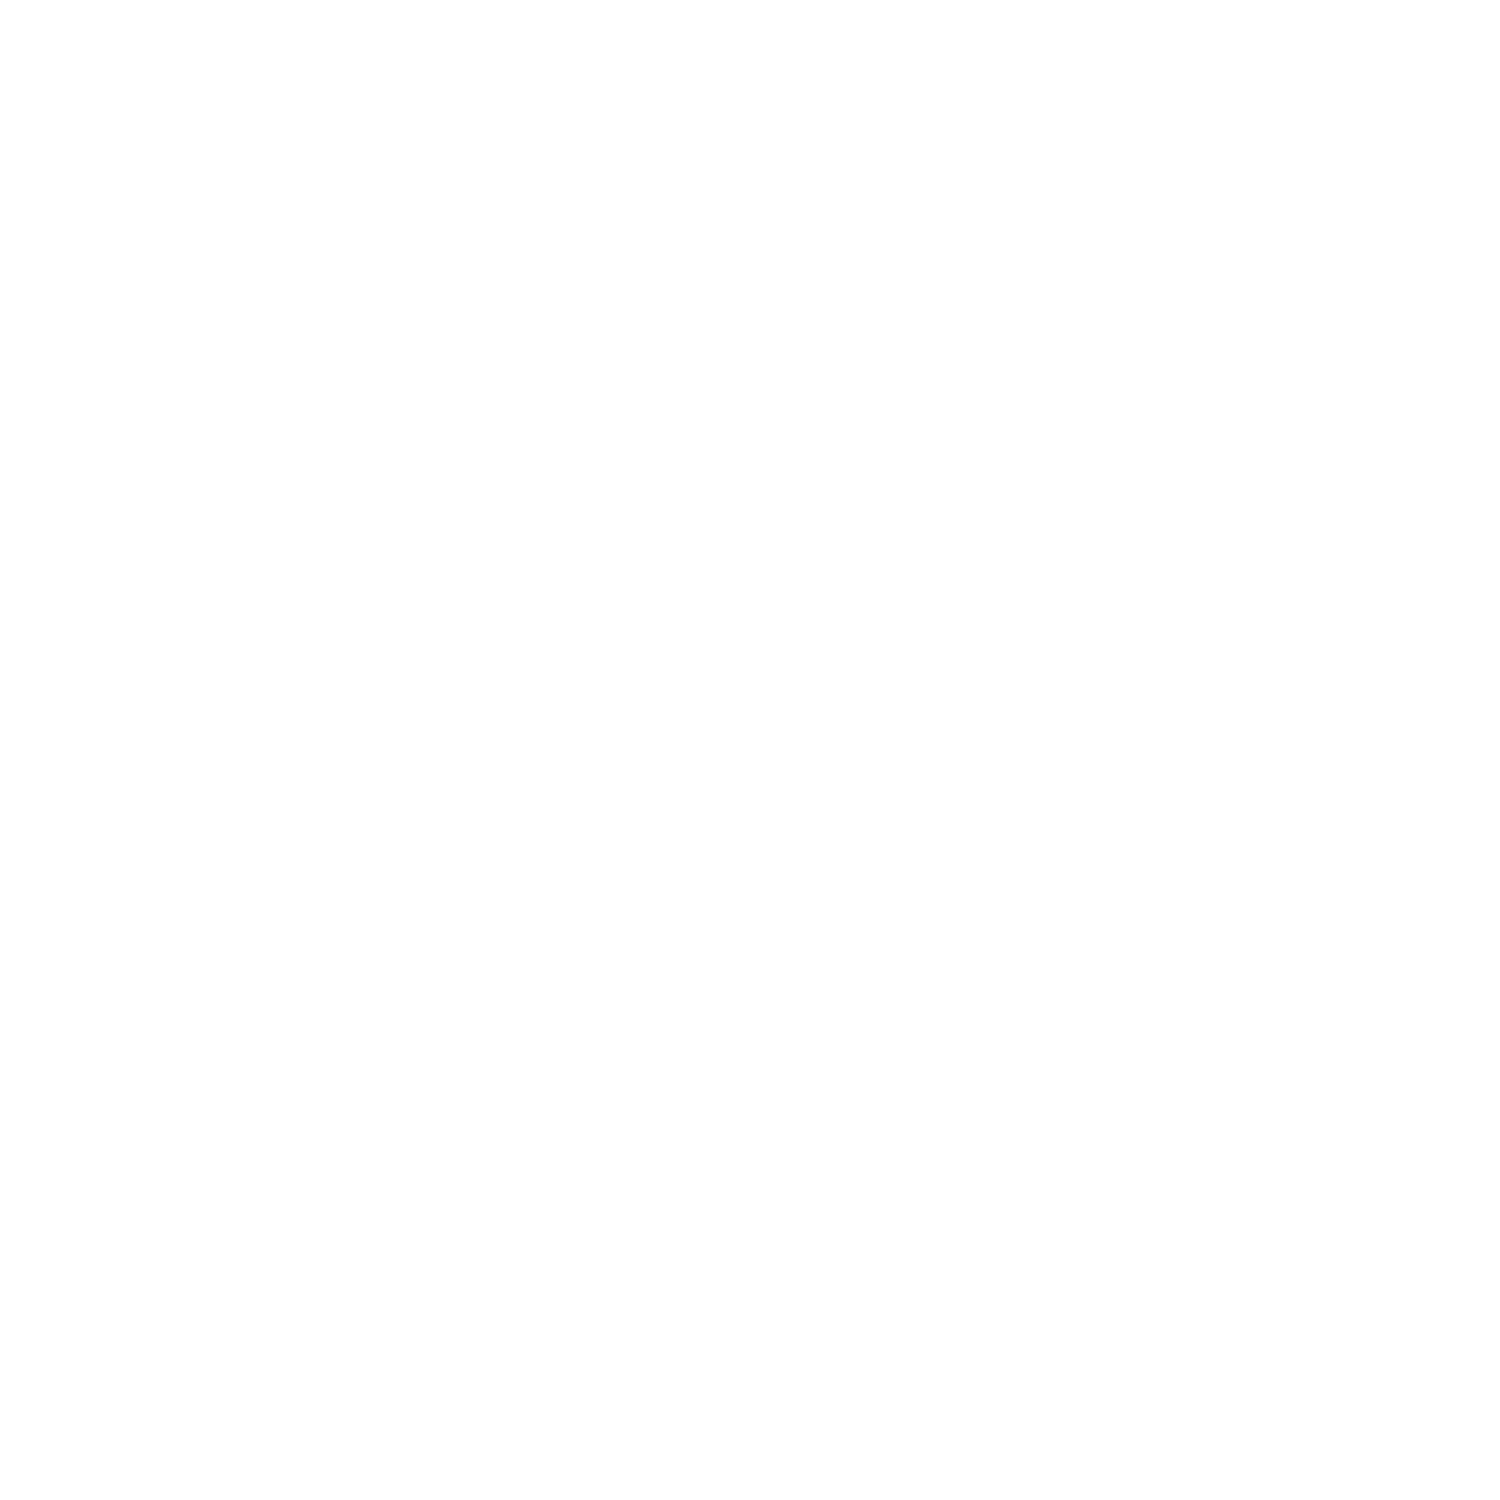 MARA’S DESIGN